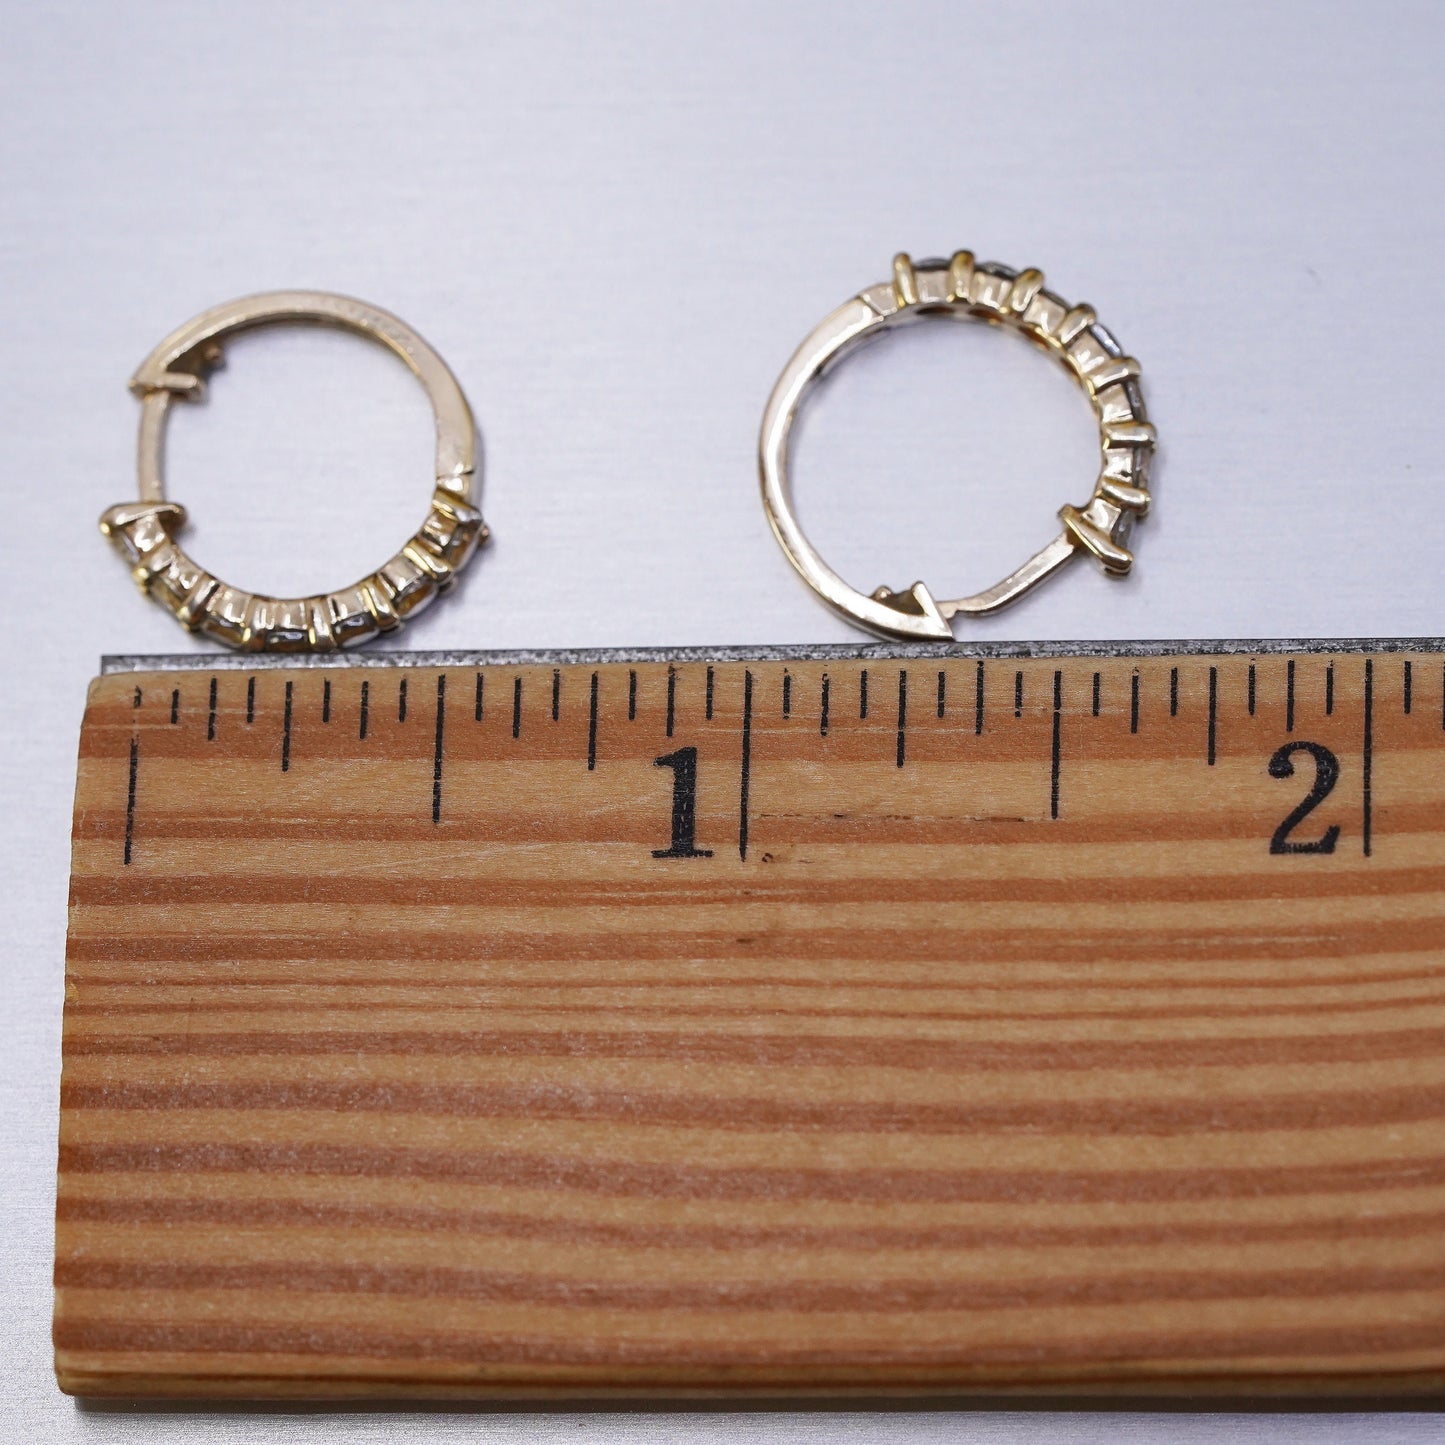 0.5", vintage vermeil gold over Sterling silver earrings, 925 huggie hoops w/ cz